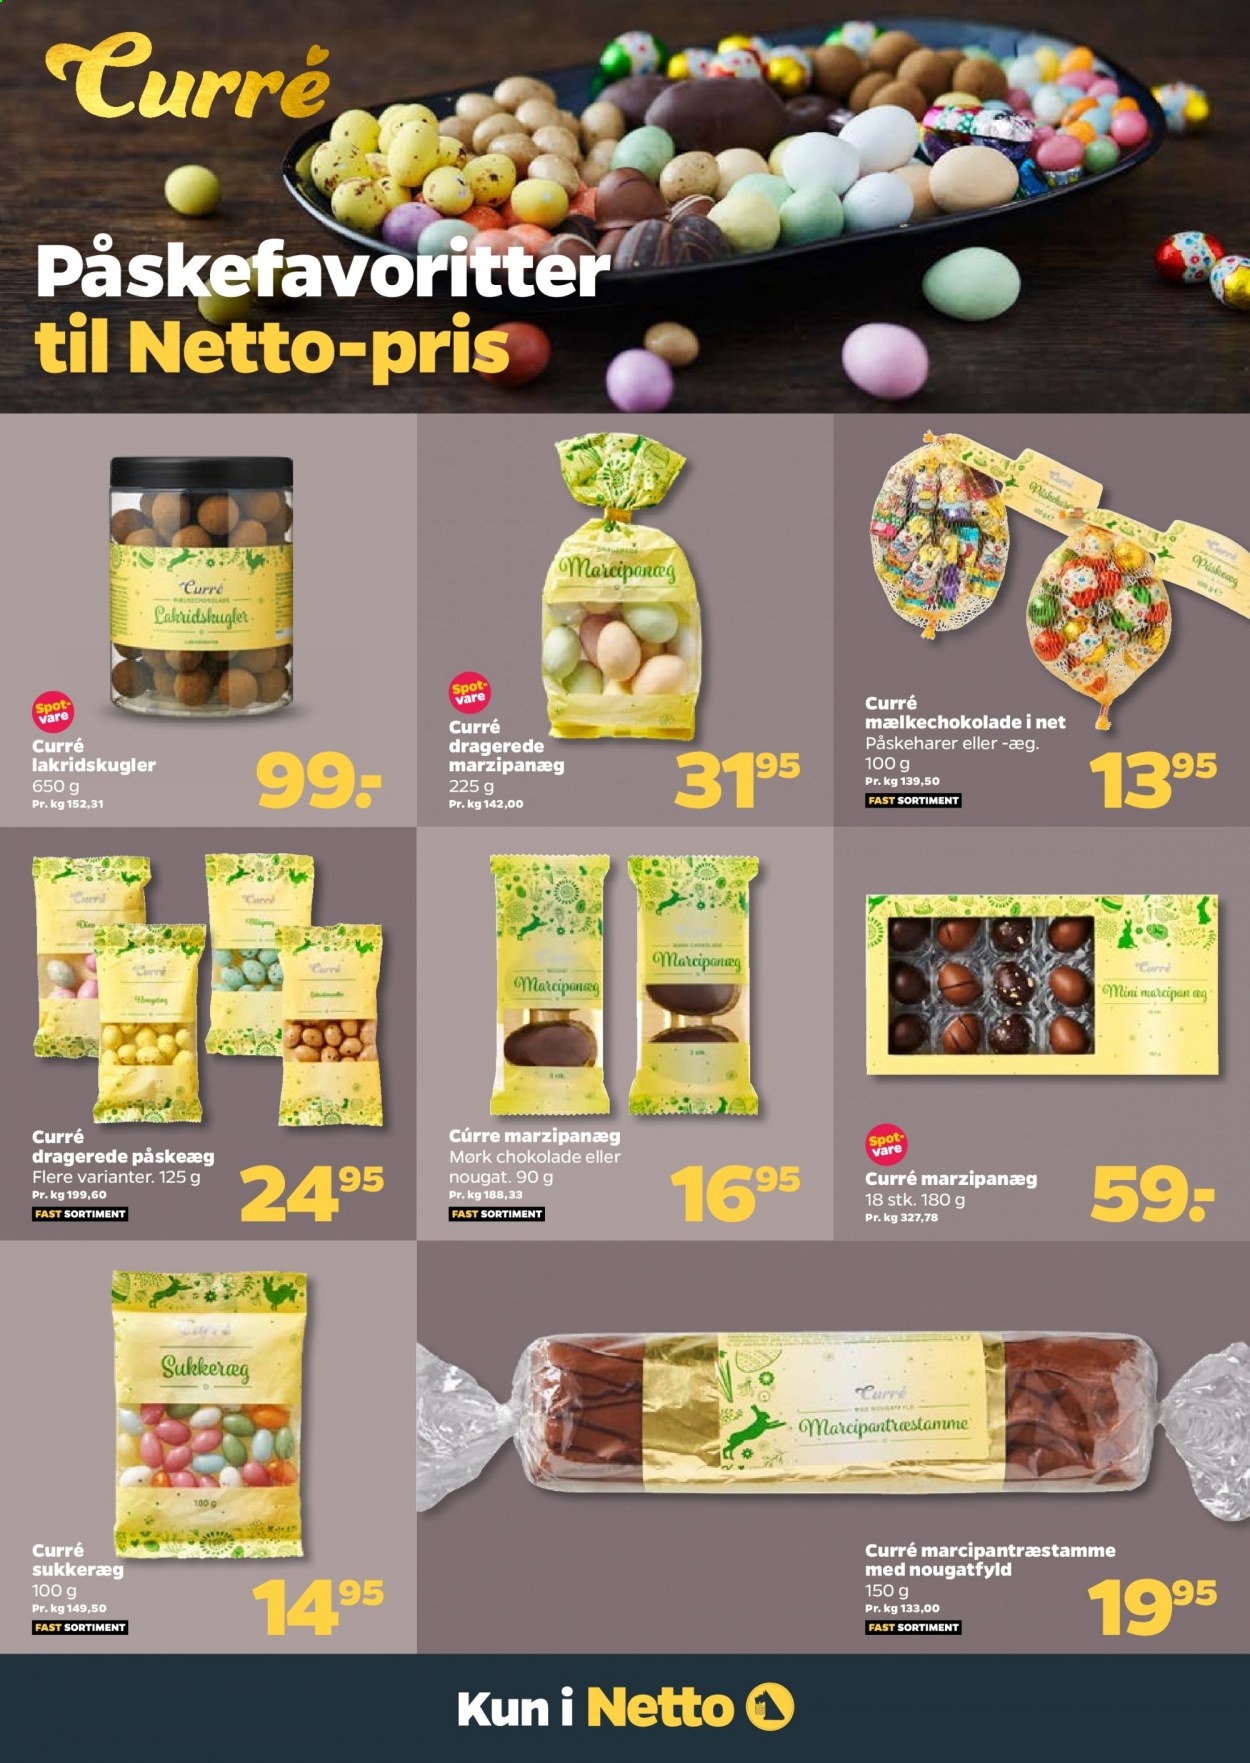 thumbnail - Netto tilbud  - 27.2.2021 - 5.3.2021 - tilbudsprodukter - chokolade, marcipan, nougat, påskeæg. Side 23.